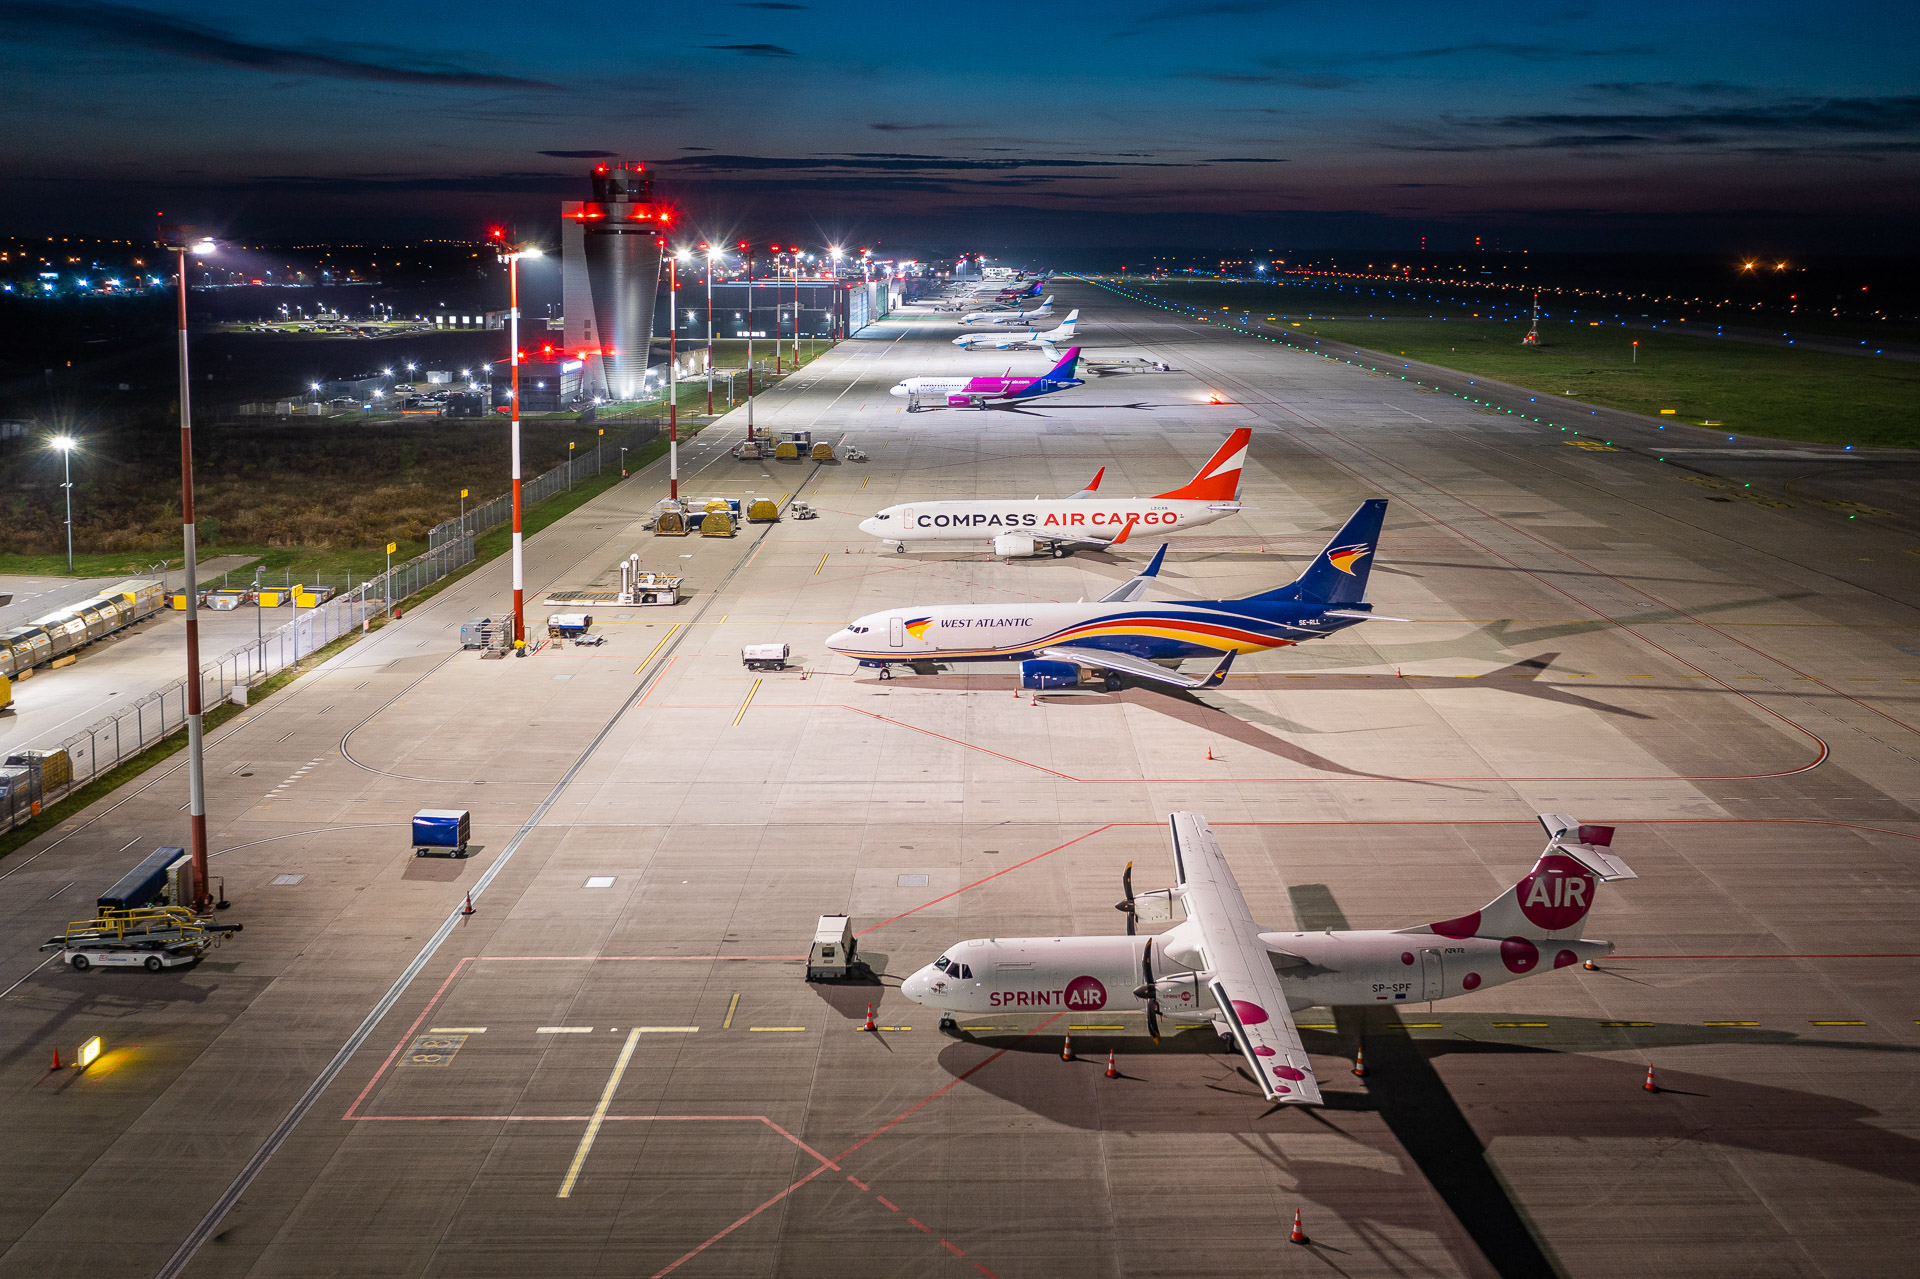 Katowice lennujaam saavutas rekordilise novembri, kus reisib üle 300,000 XNUMX reisija